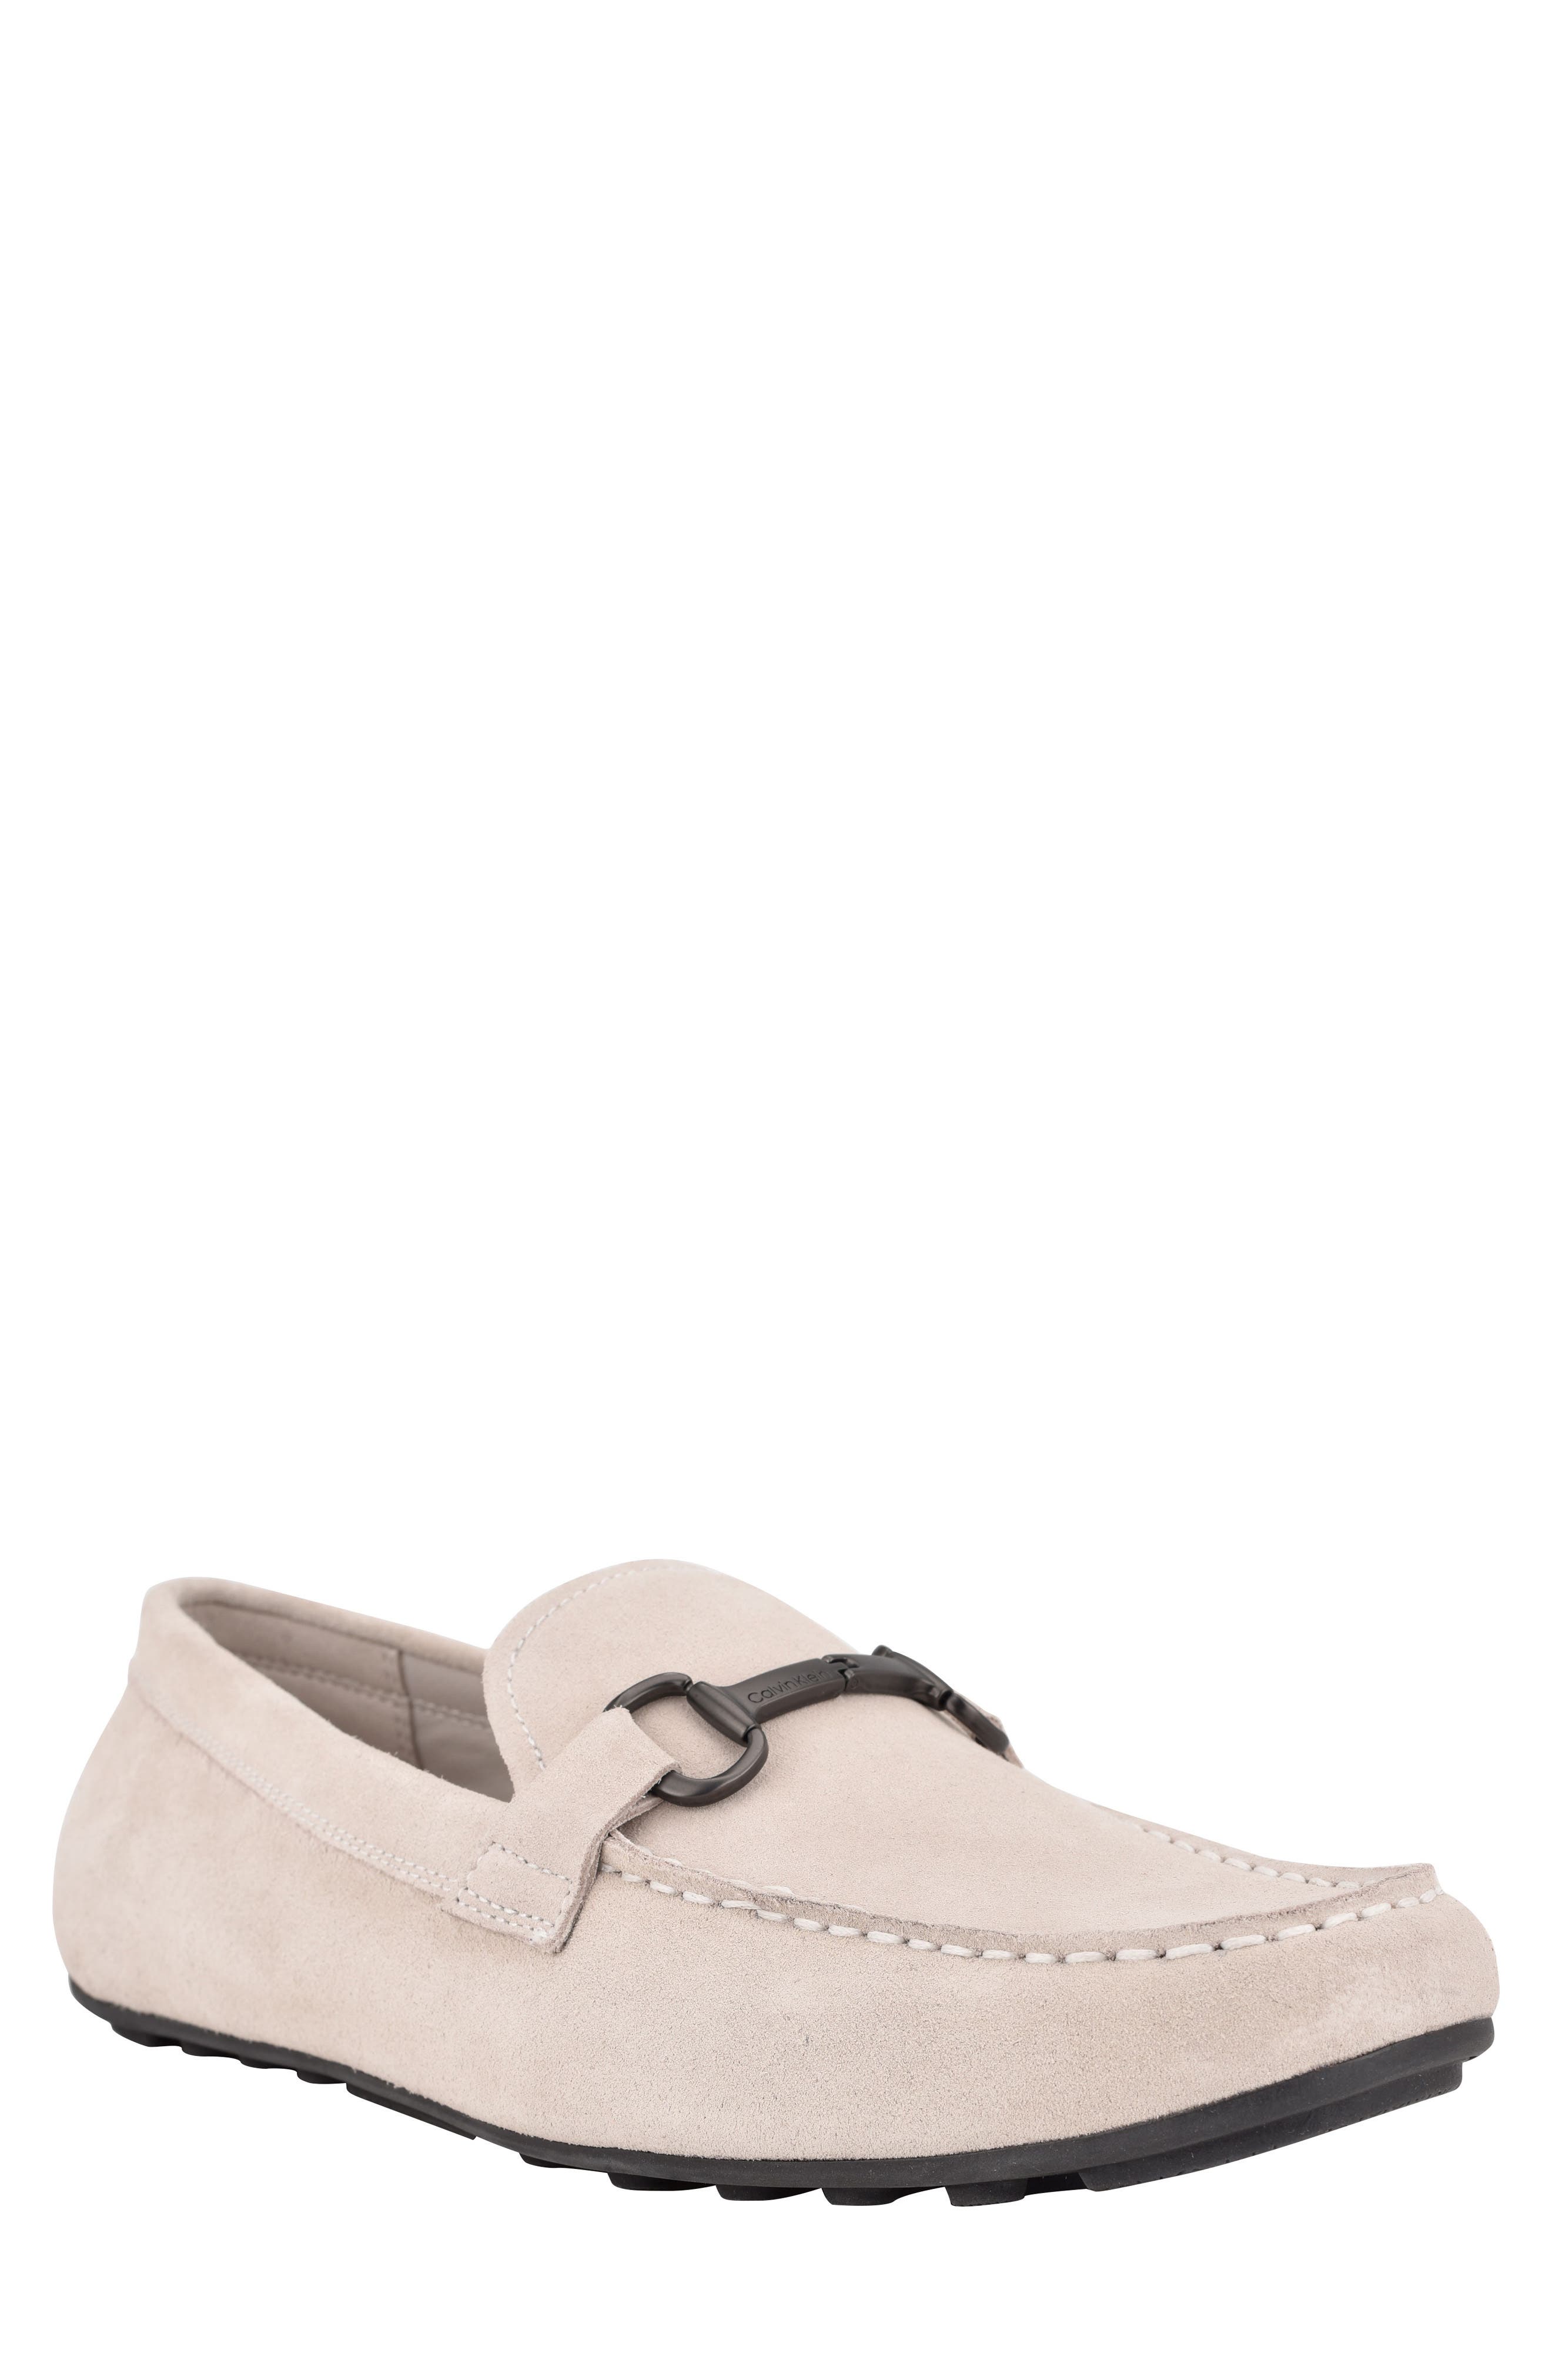 calvin klein white slip on shoes